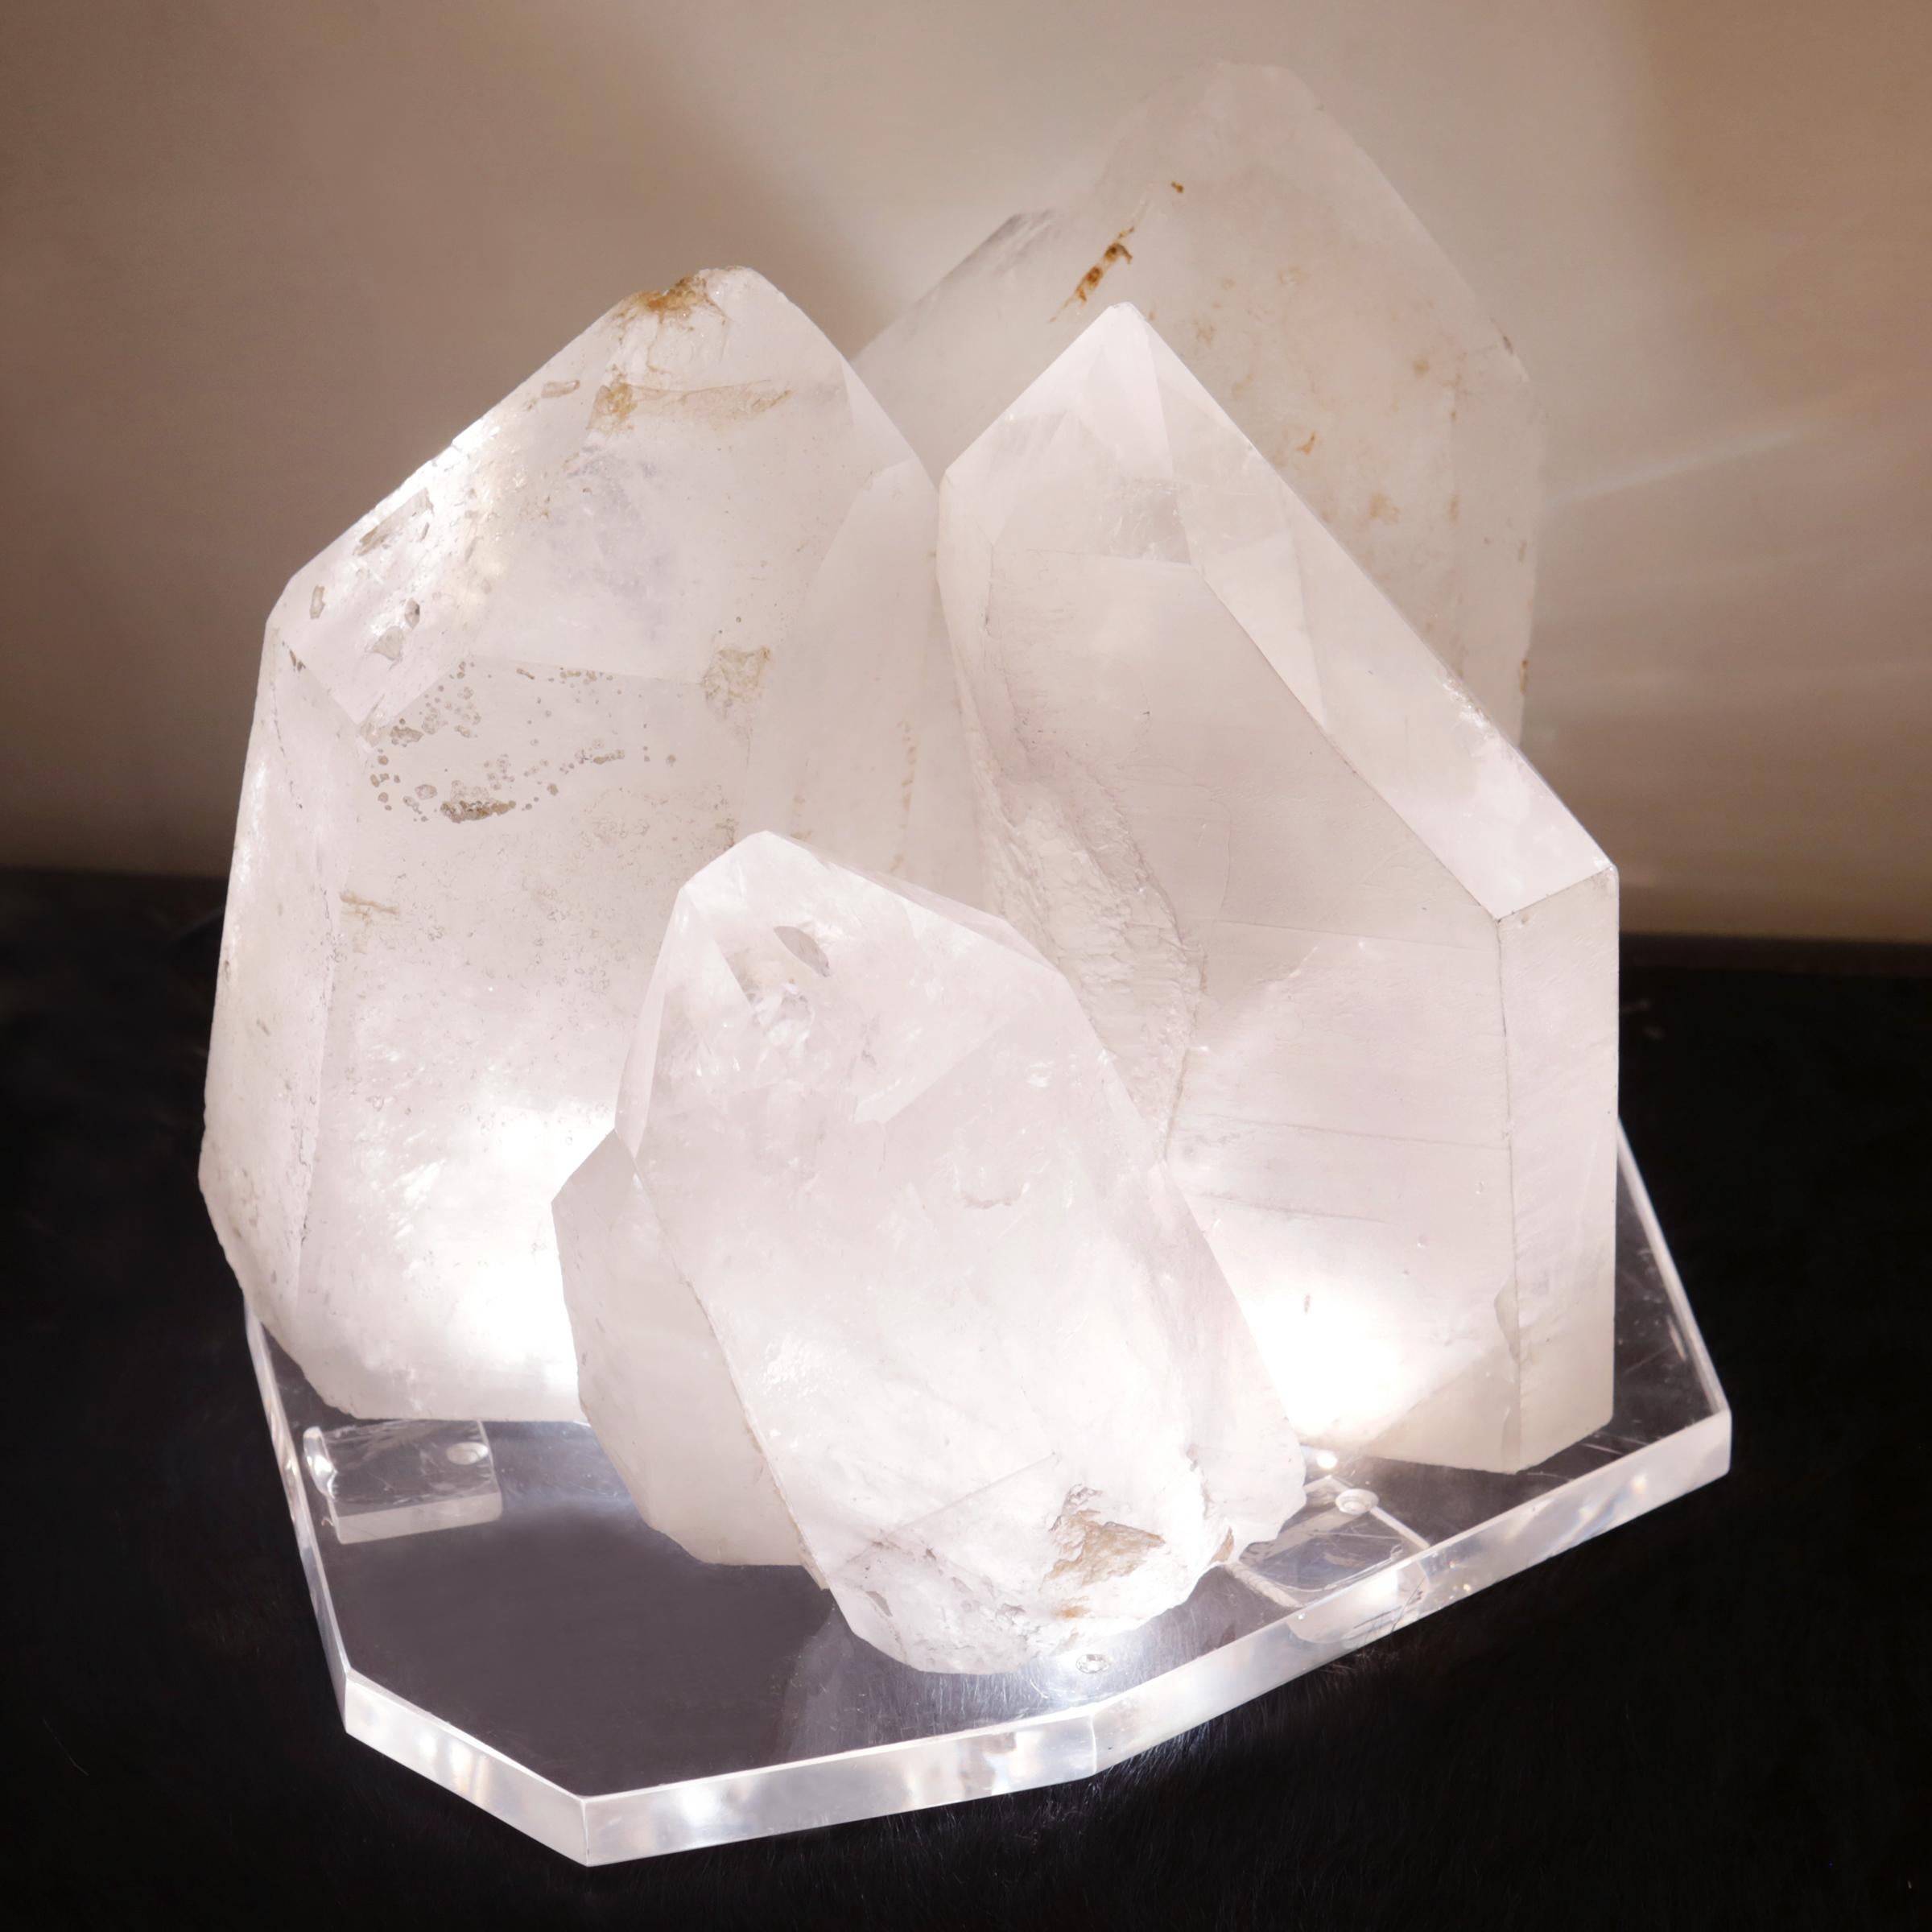 Carved Crystals Formation Sculpture on LED Lighted Base